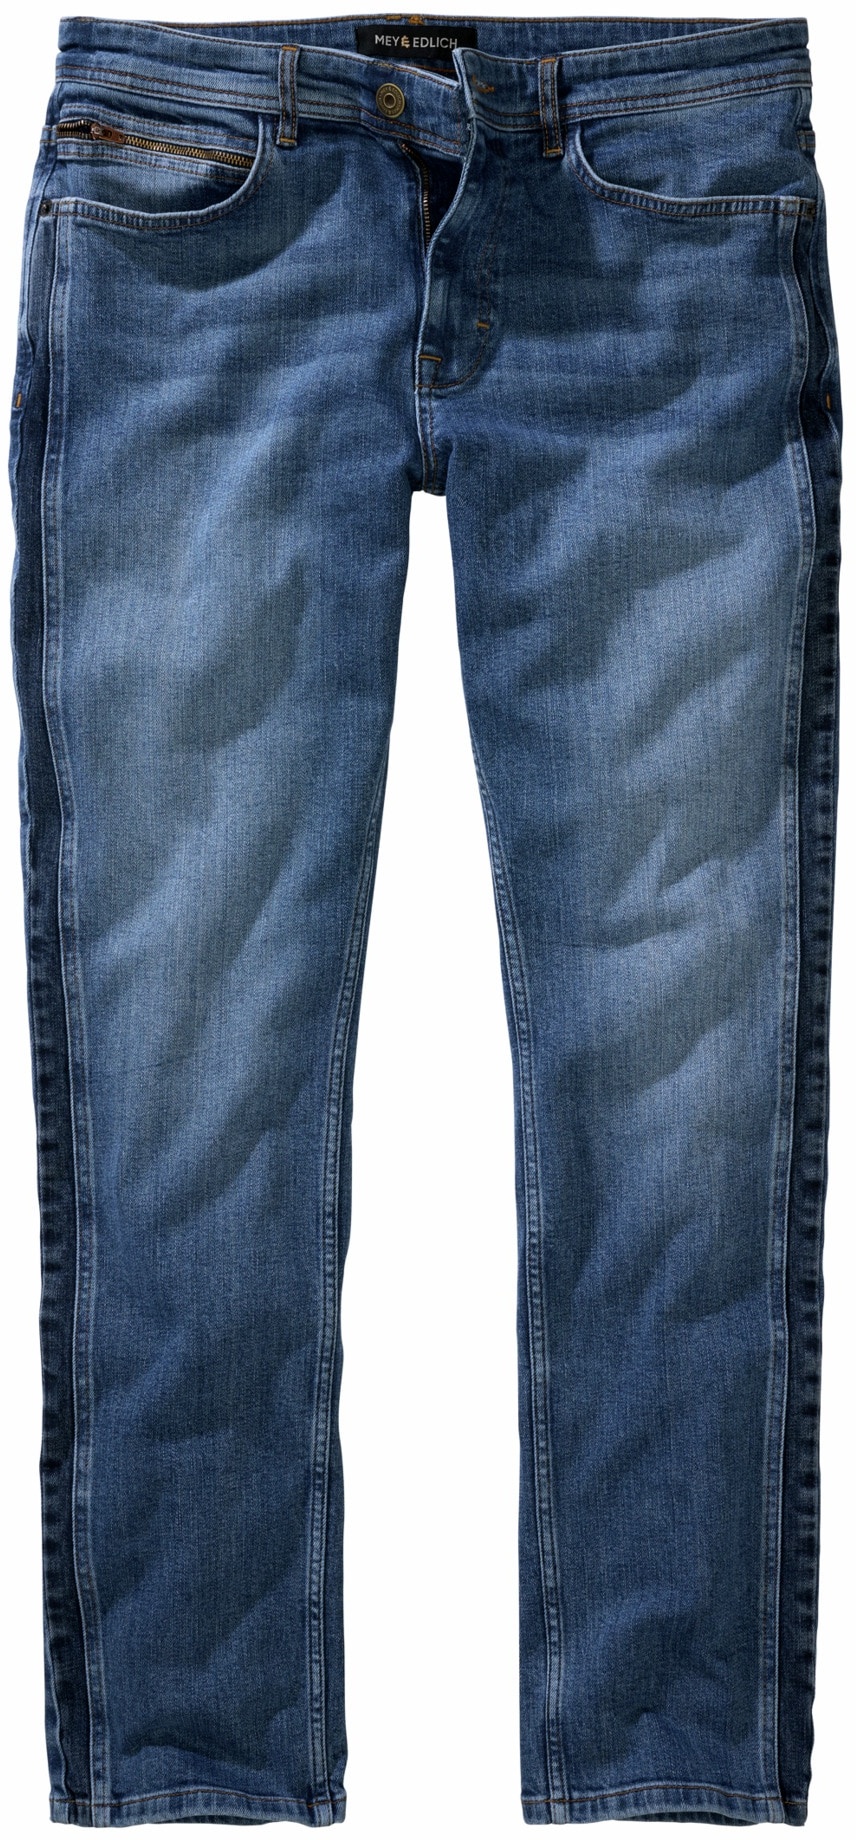 Mey & Edlich Herren Jeans-Hose Regular Tapered Blau einfarbig - 34/32